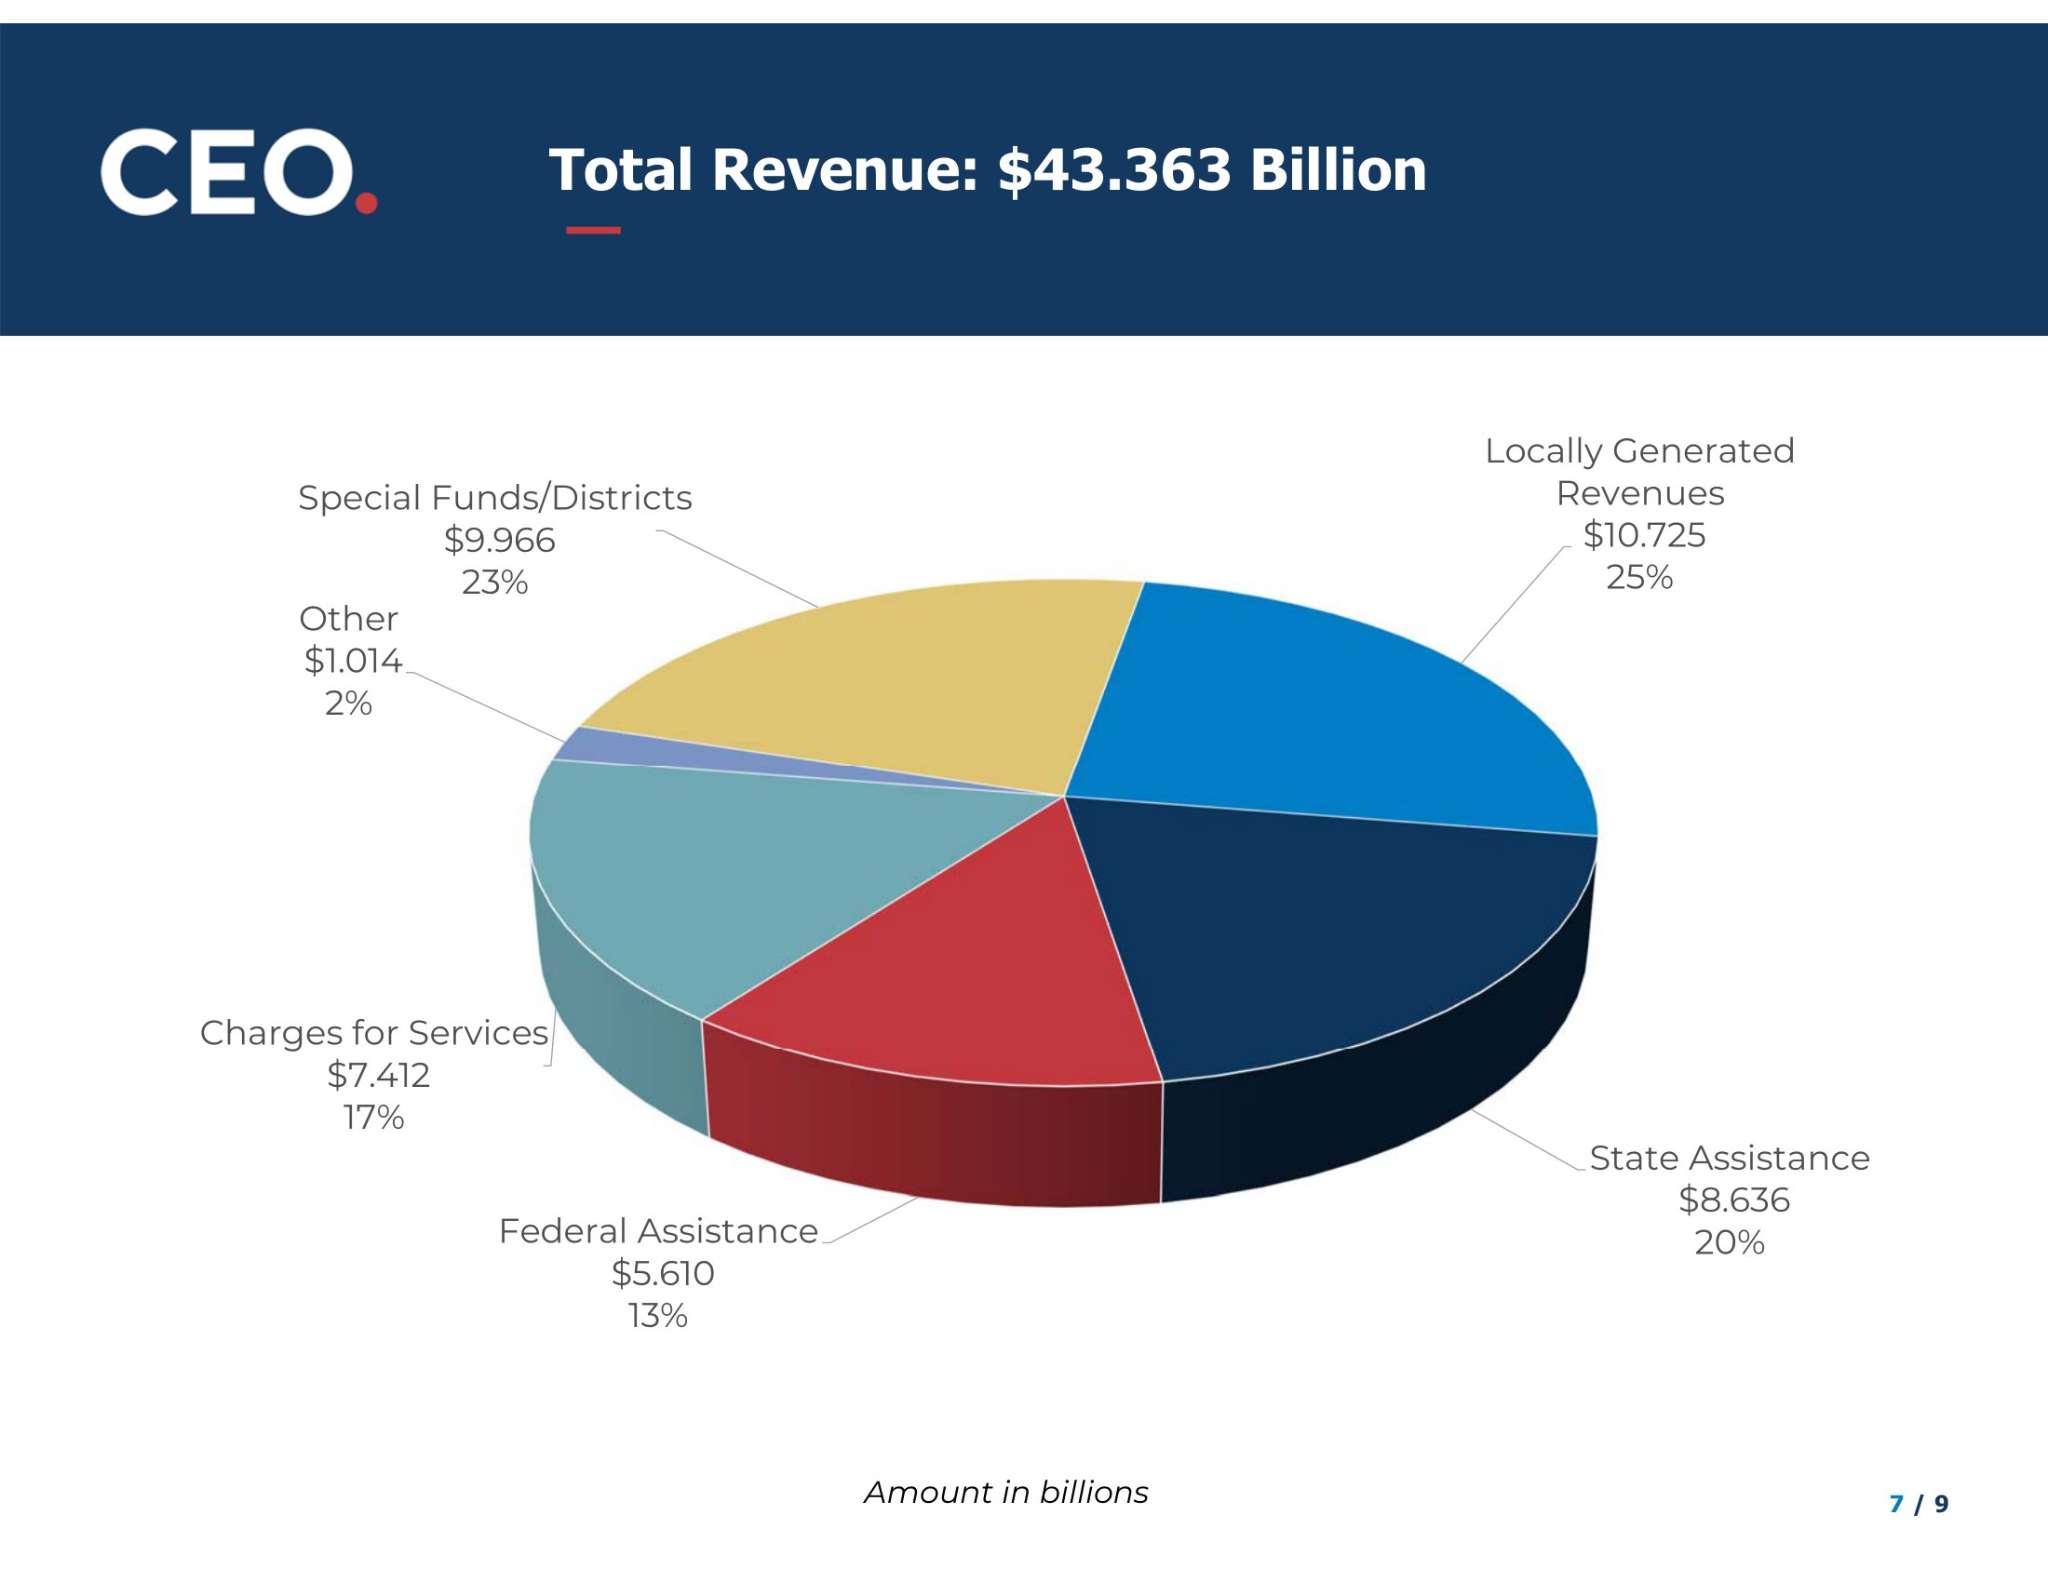 Total Revenues: $43.363 Billion